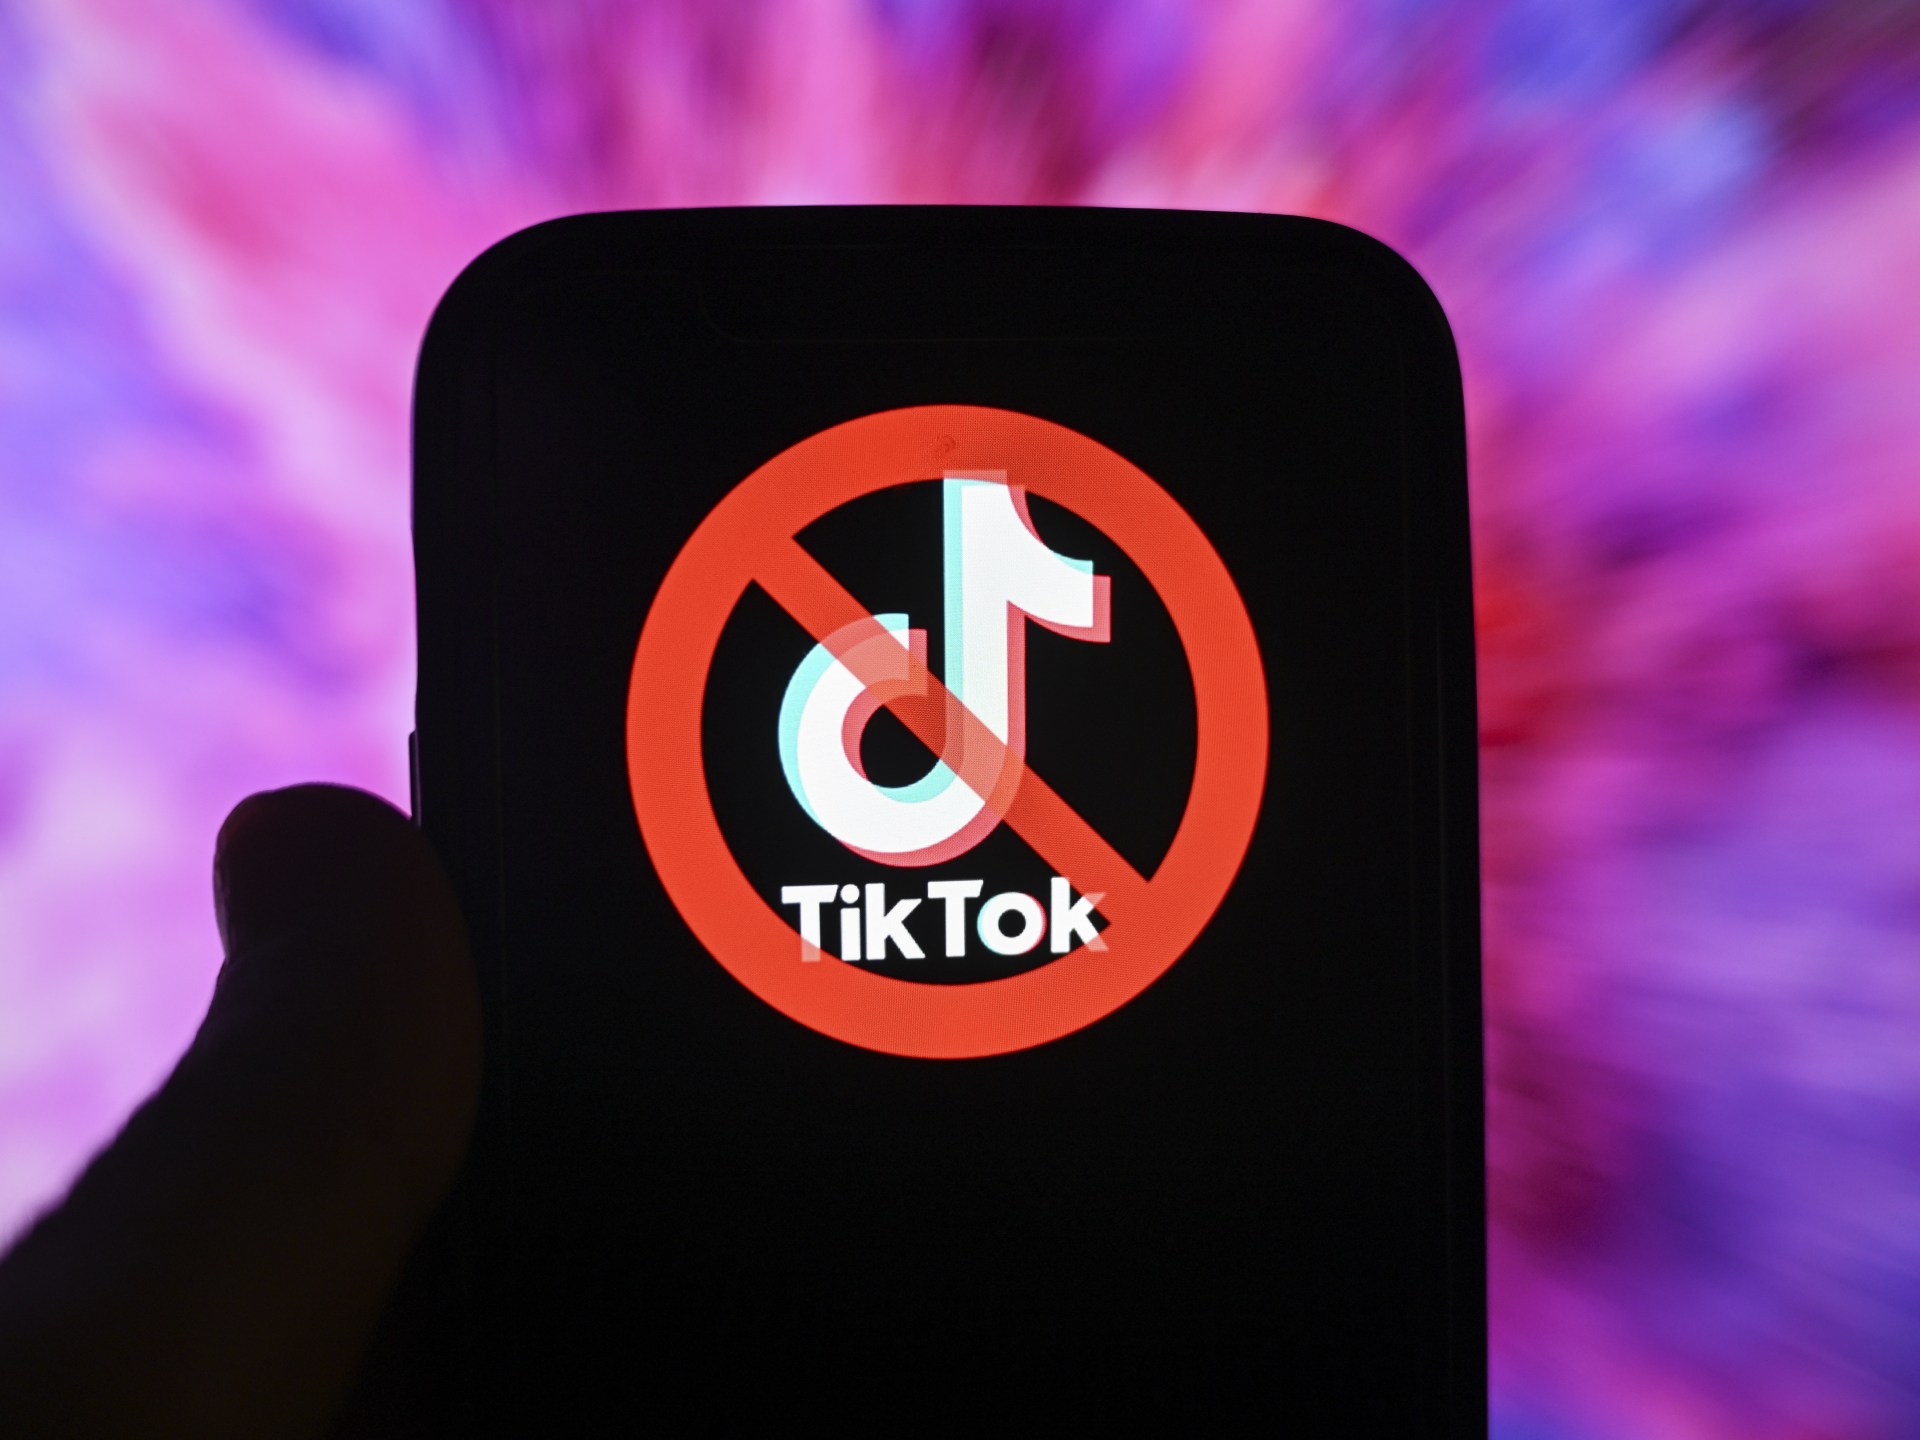 هجوم إلكتروني يستهدف حسابات بارزة على تيك توك | تكنولوجيا – البوكس نيوز